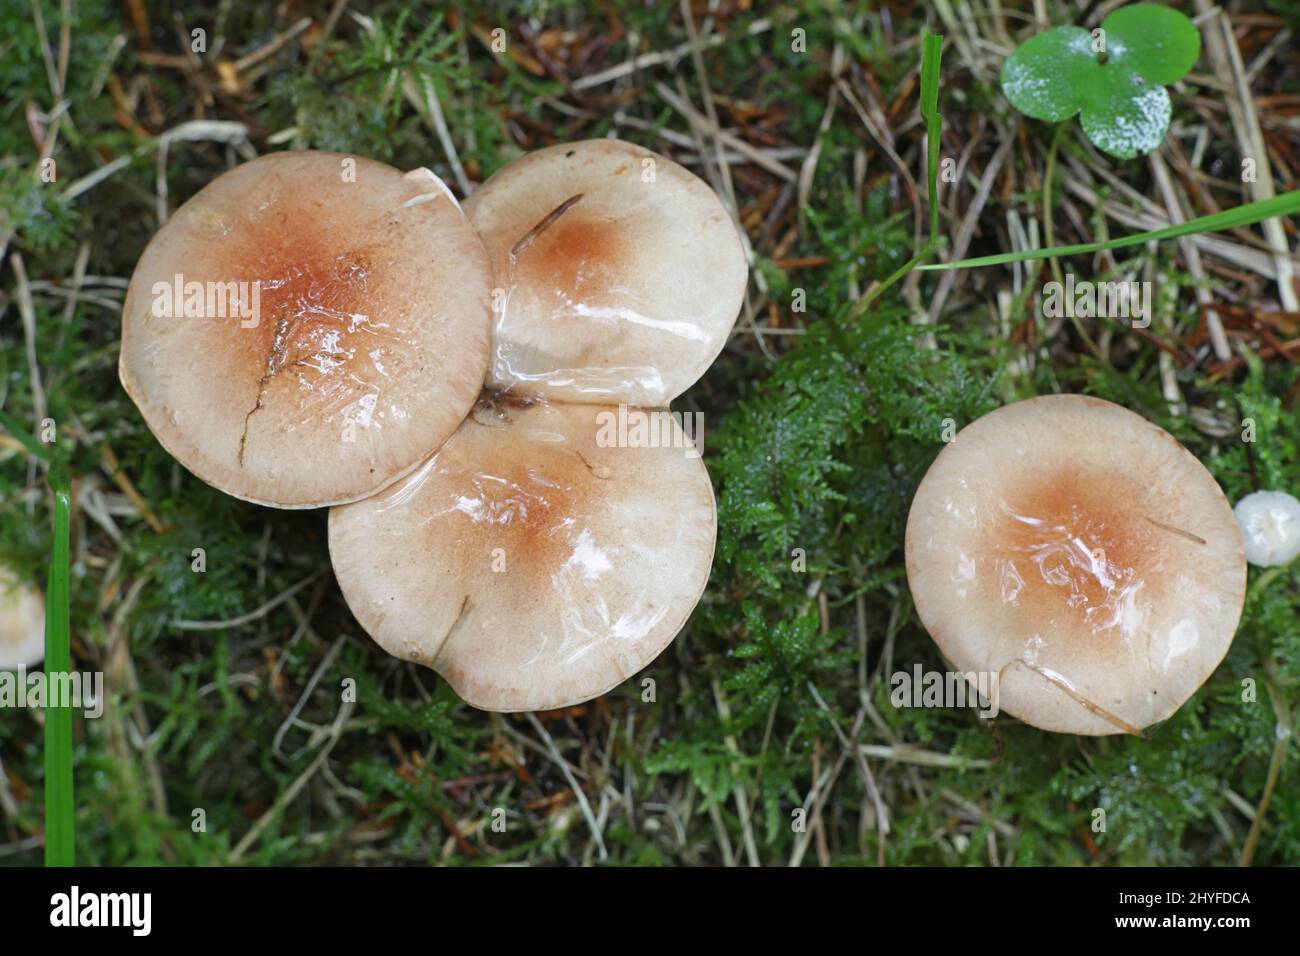 Hebeloma mesophaeum, als verschleierte poisonpie oder Gift pie bekannt, Wild Mushroom aus Finnland Stockfoto